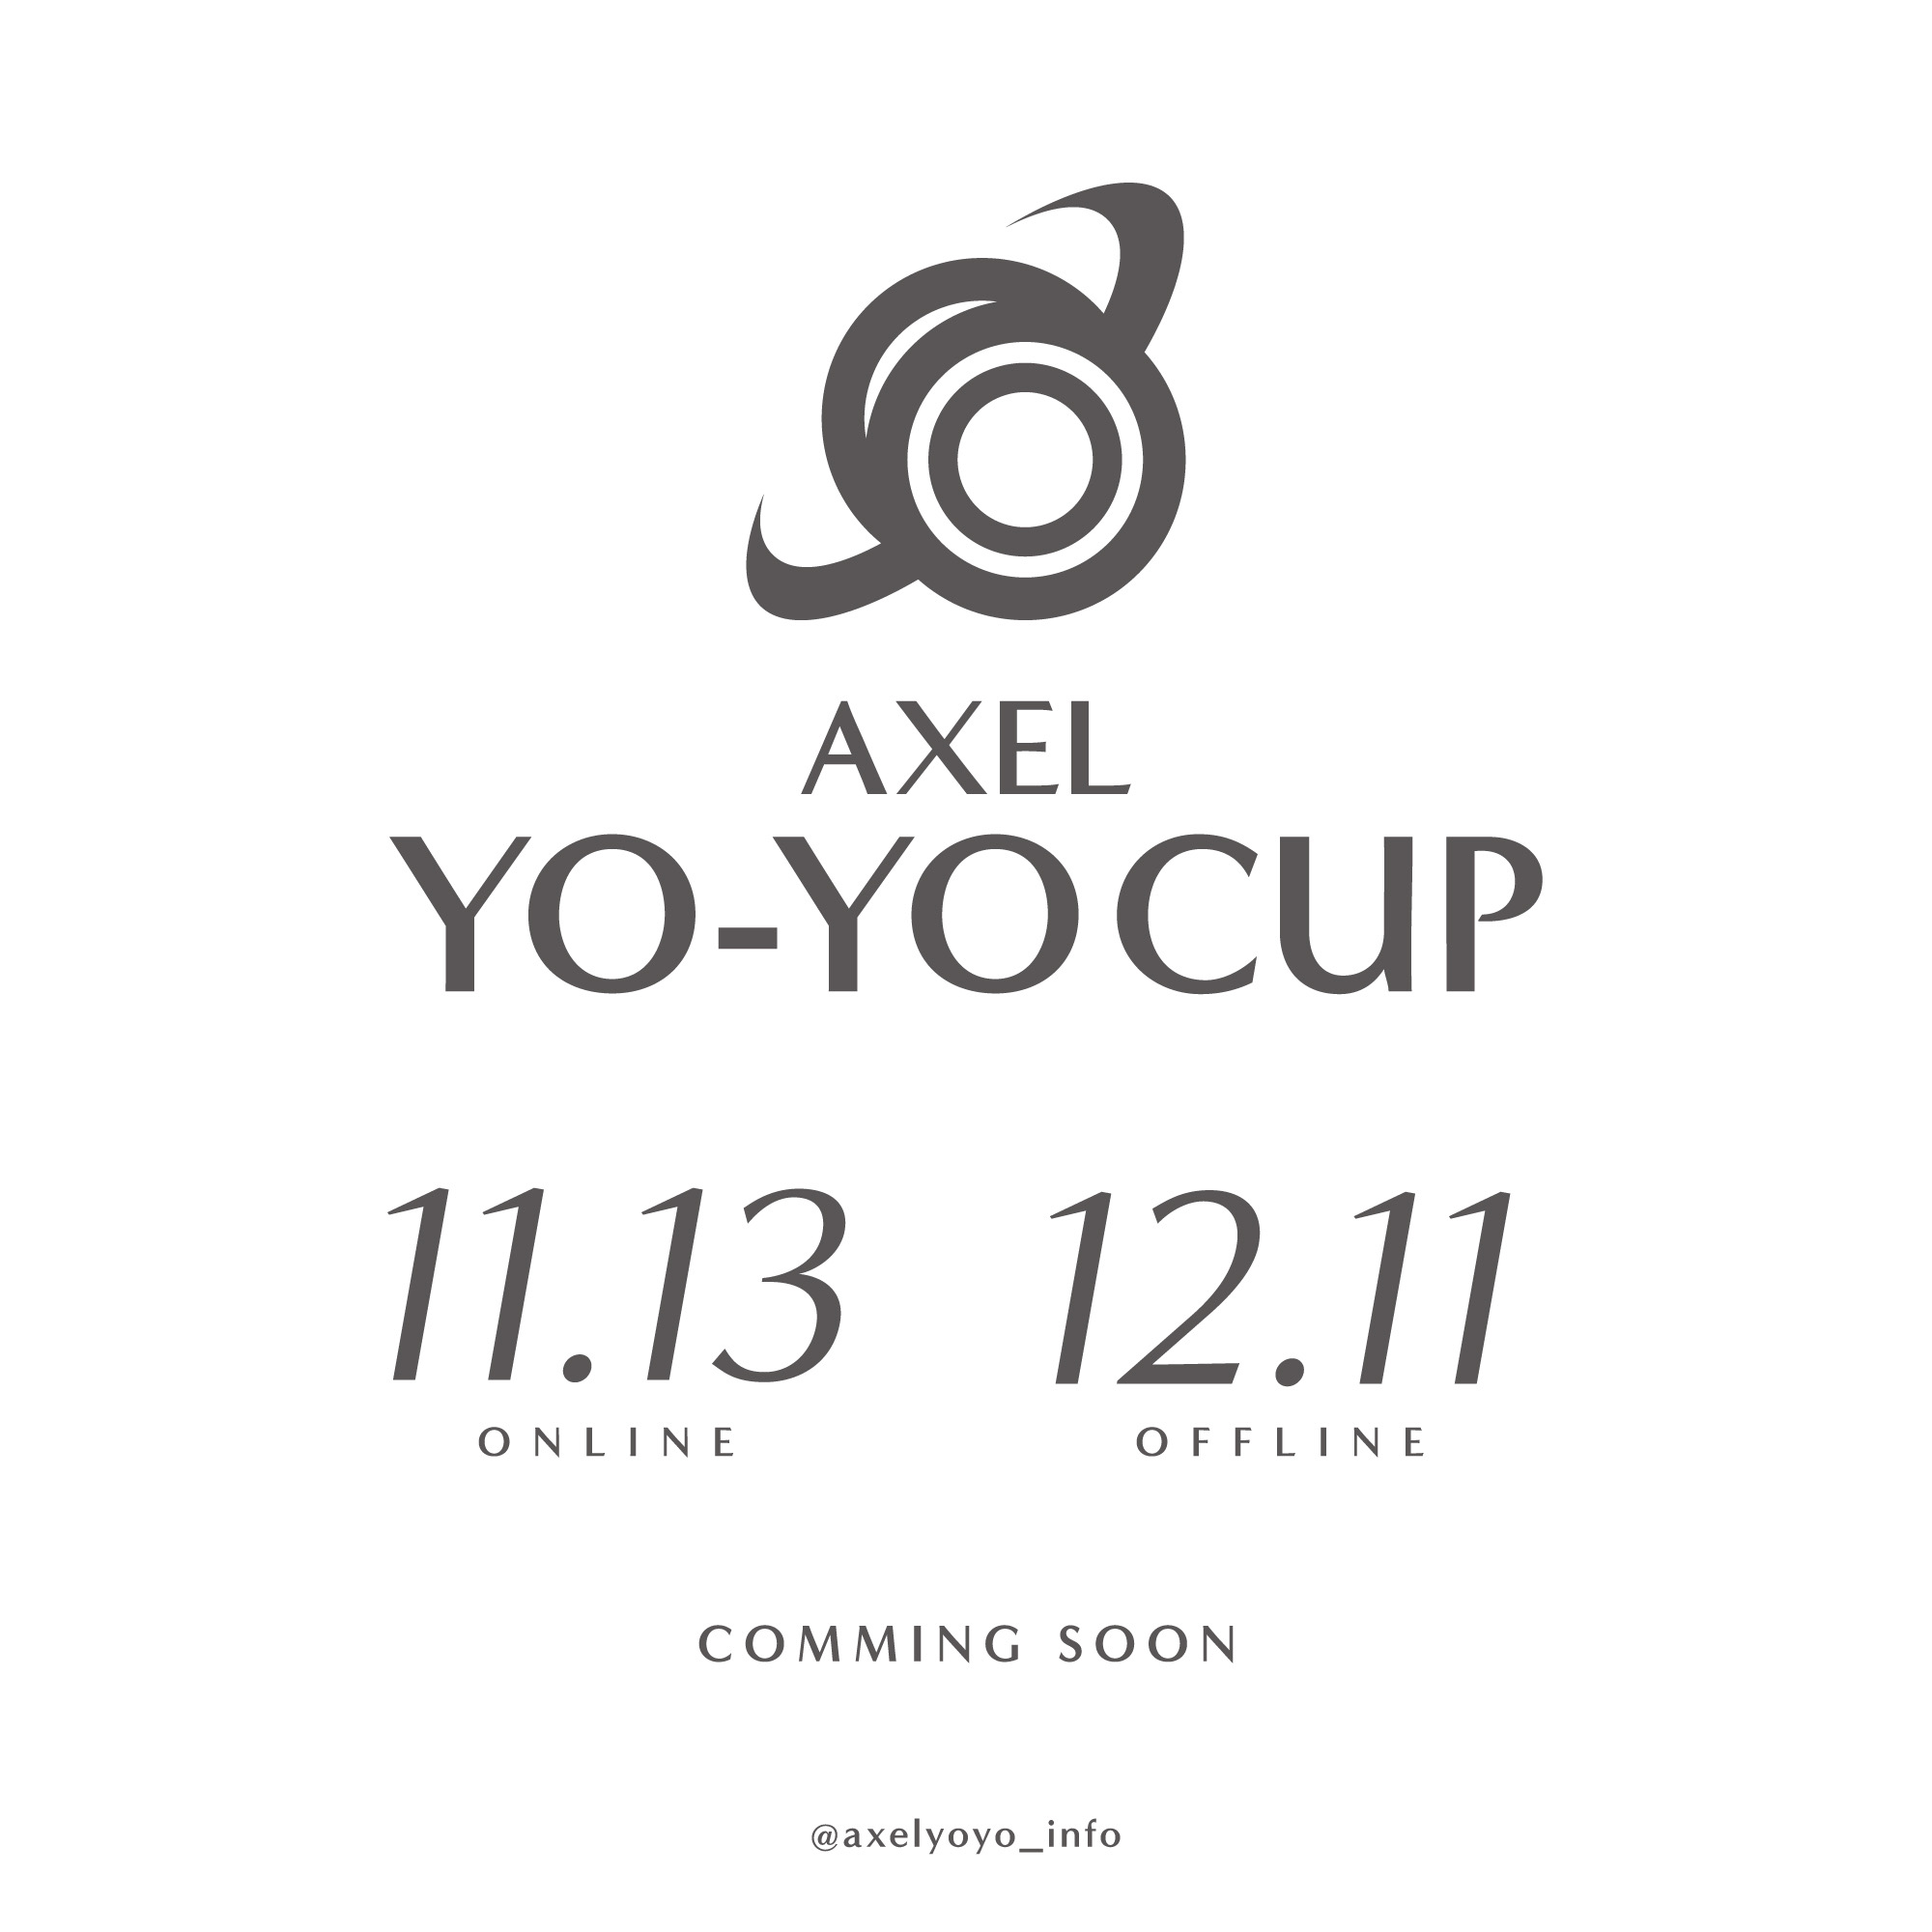 AXEL YO-YO CUP 2021